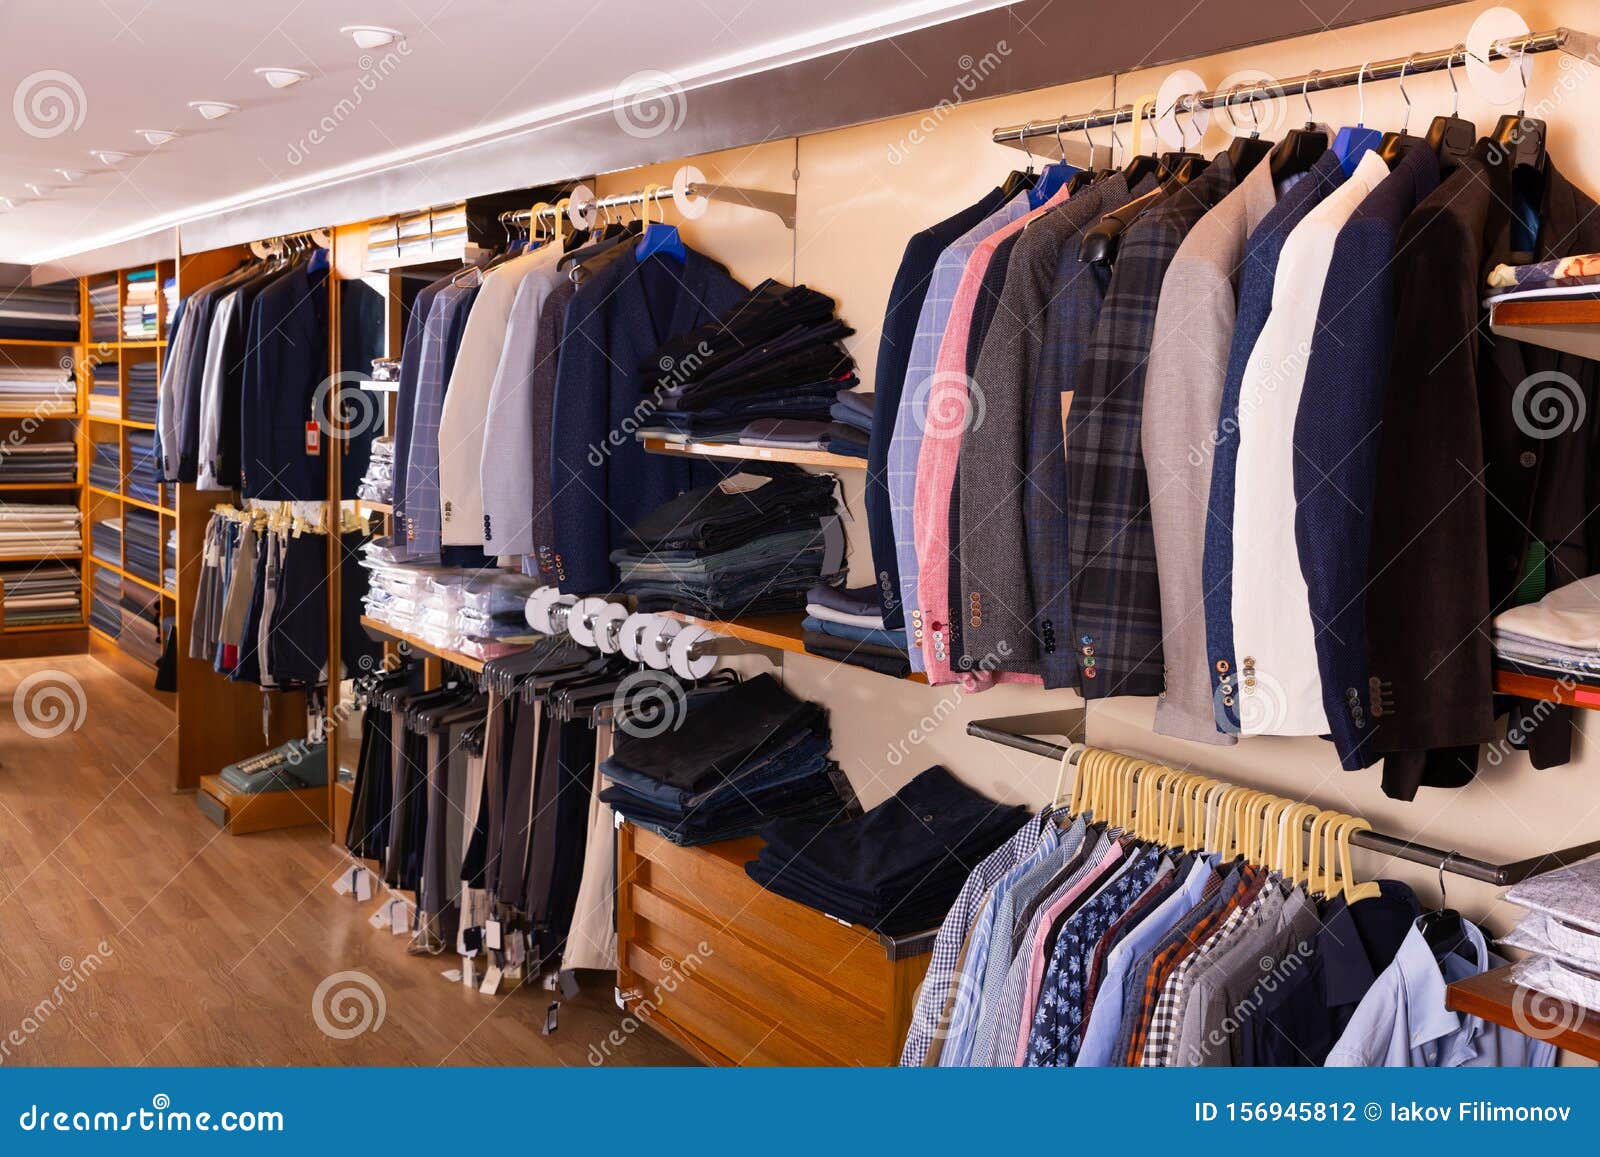 Interior of Stylish Men Clothing Store Stock Photo - Image of fabric ...